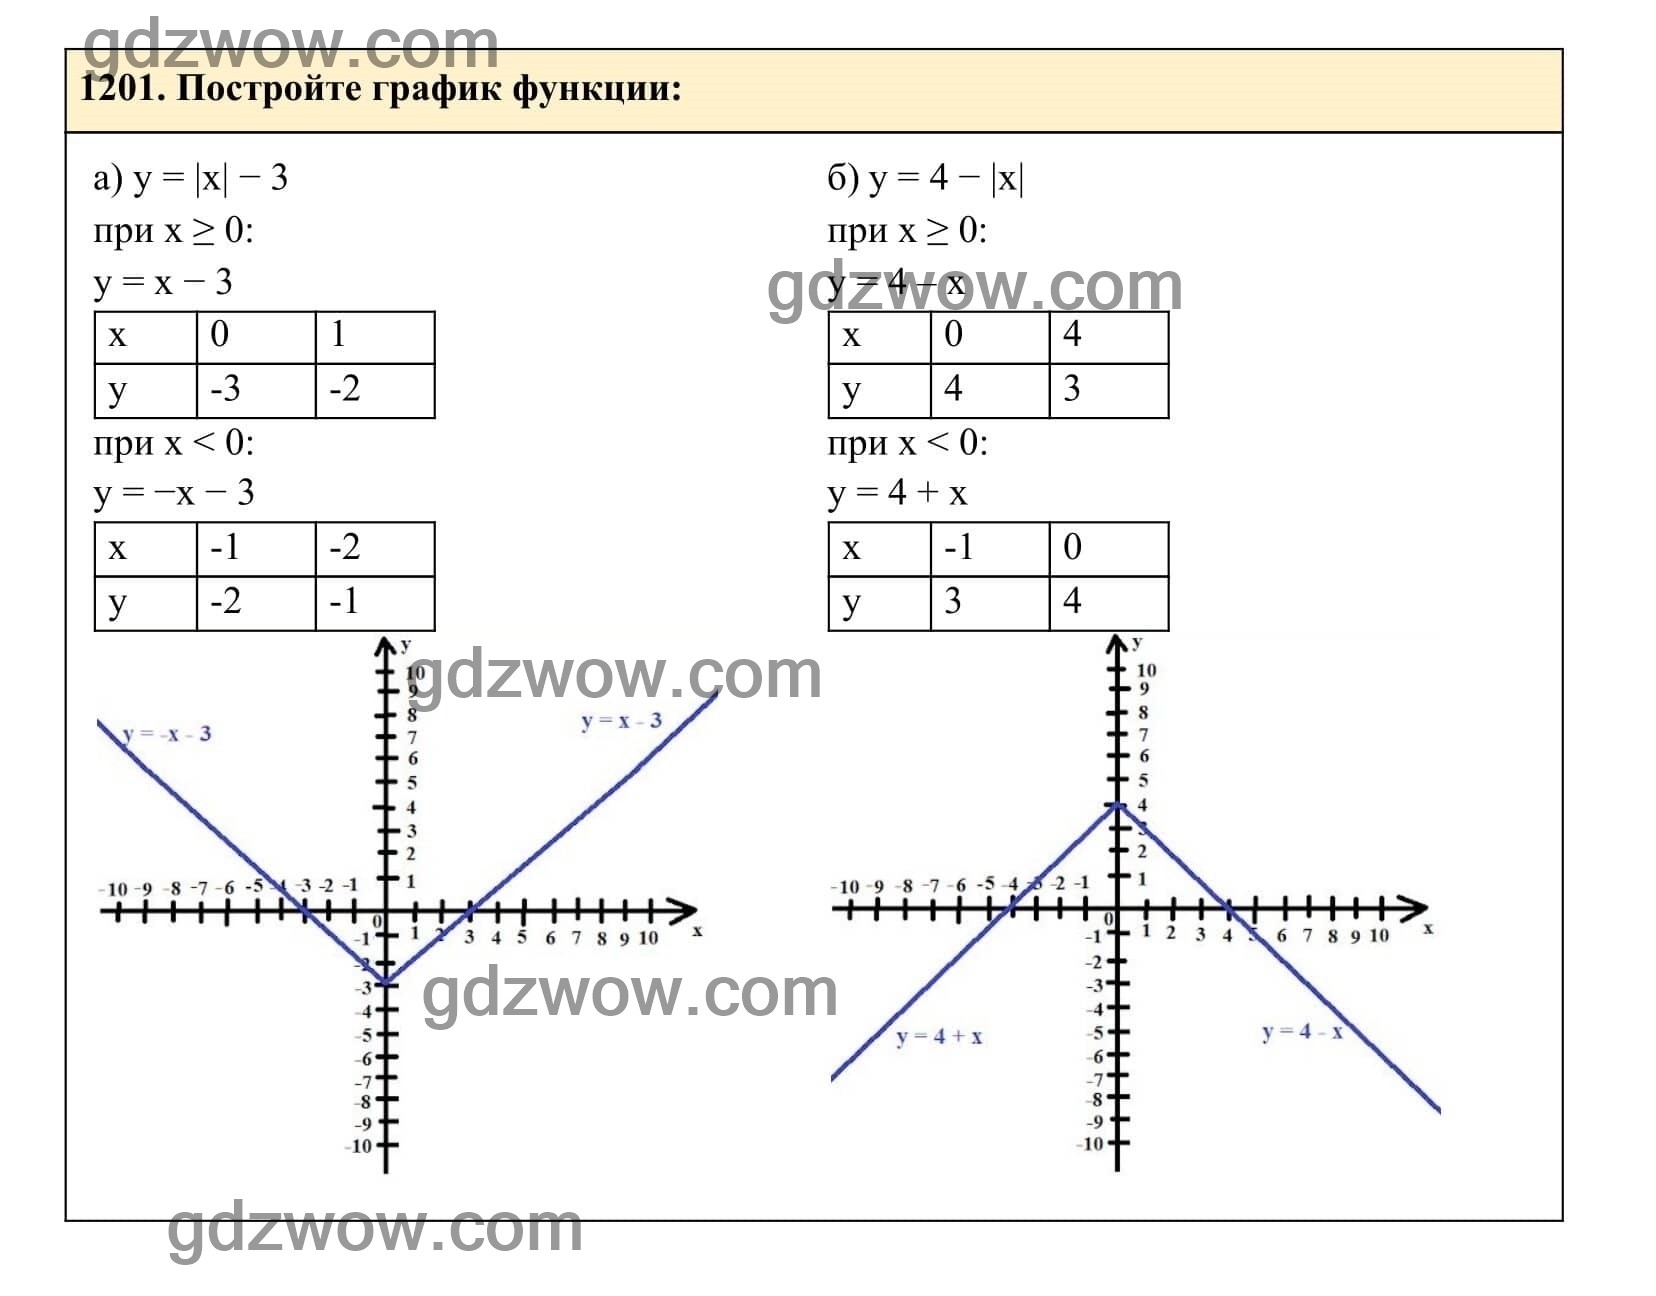 Упражнение 1201 - ГДЗ по Алгебре 7 класс Учебник Макарычев (решебник) - GDZwow